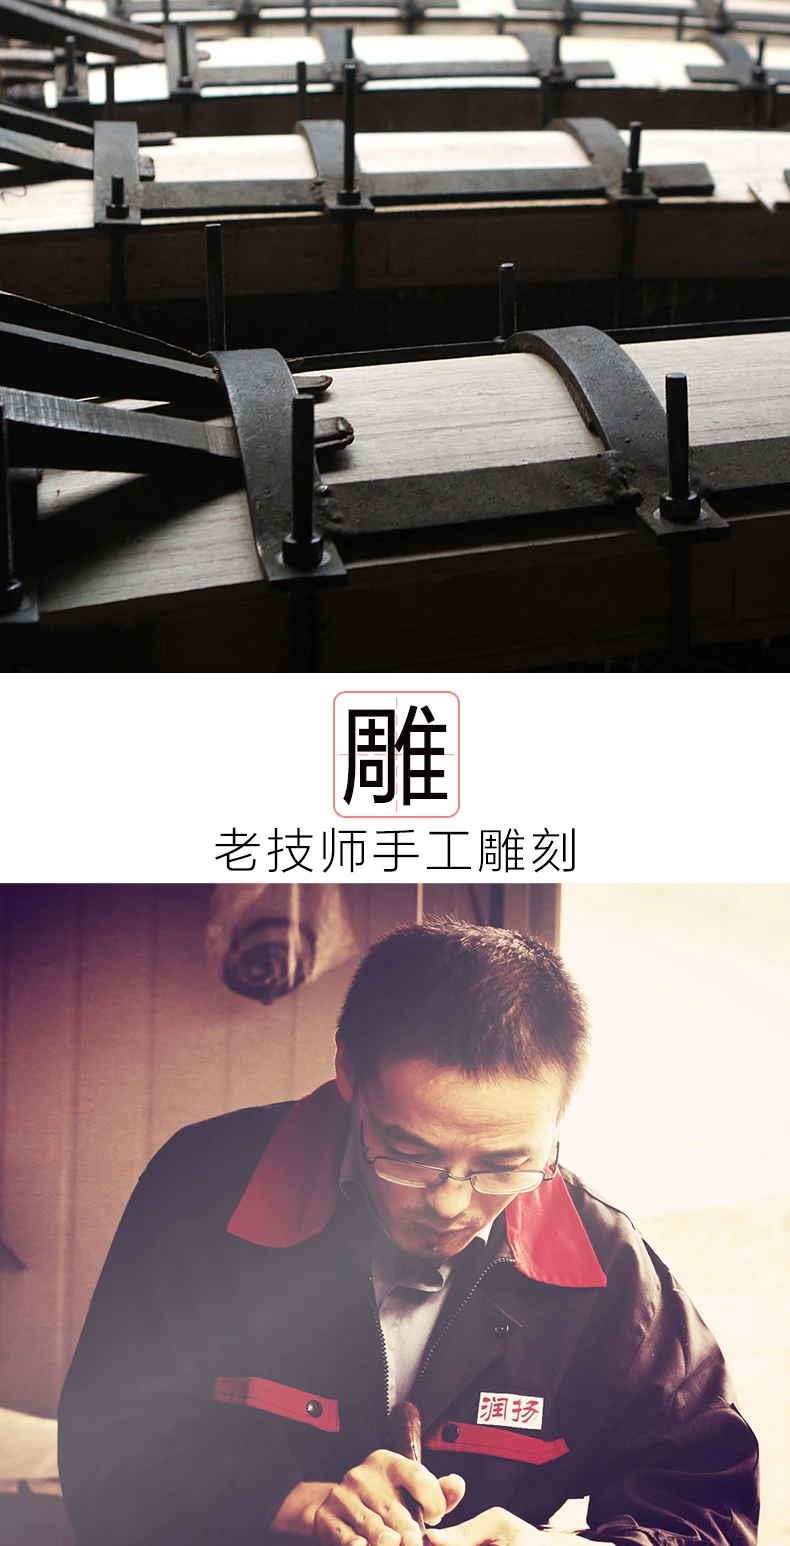 Профессиональный 21 струнный китайский zither белая сосна из массива дерева guzheng профессиональные копки вставки из цельного дерева u zheng zither